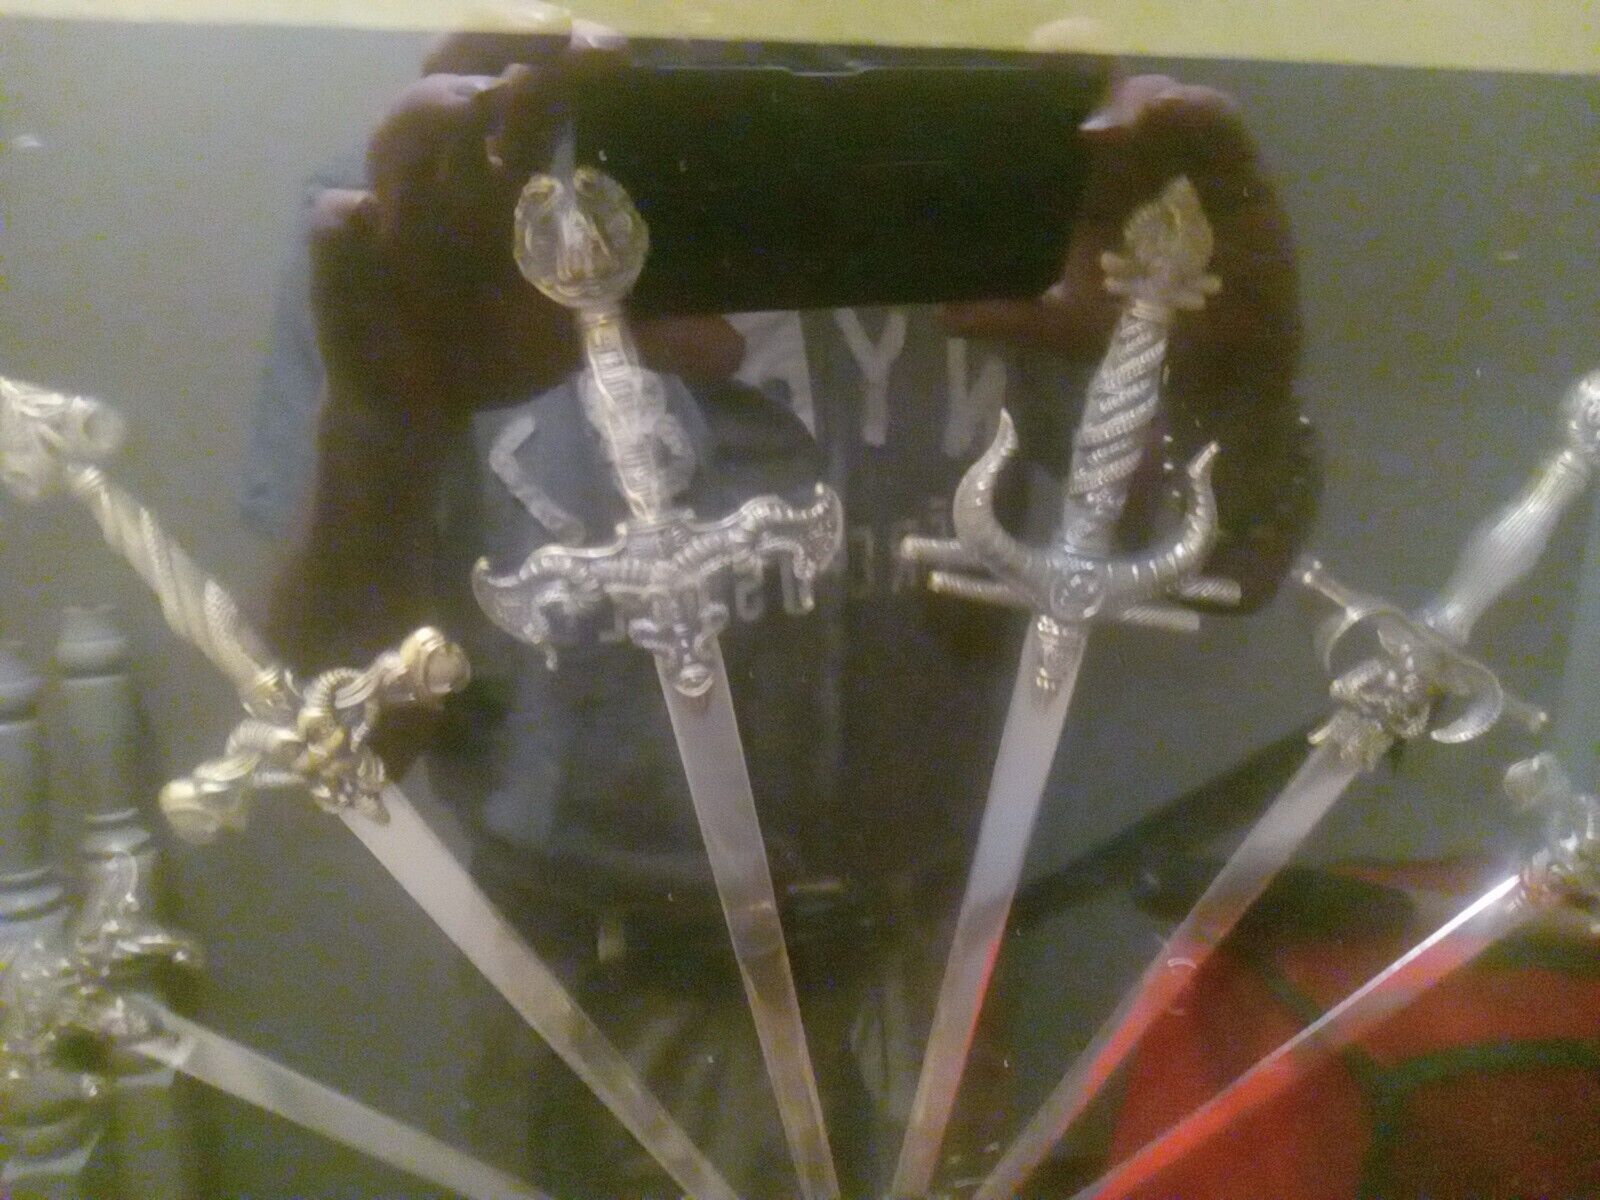 Swords replica In Shadow Box